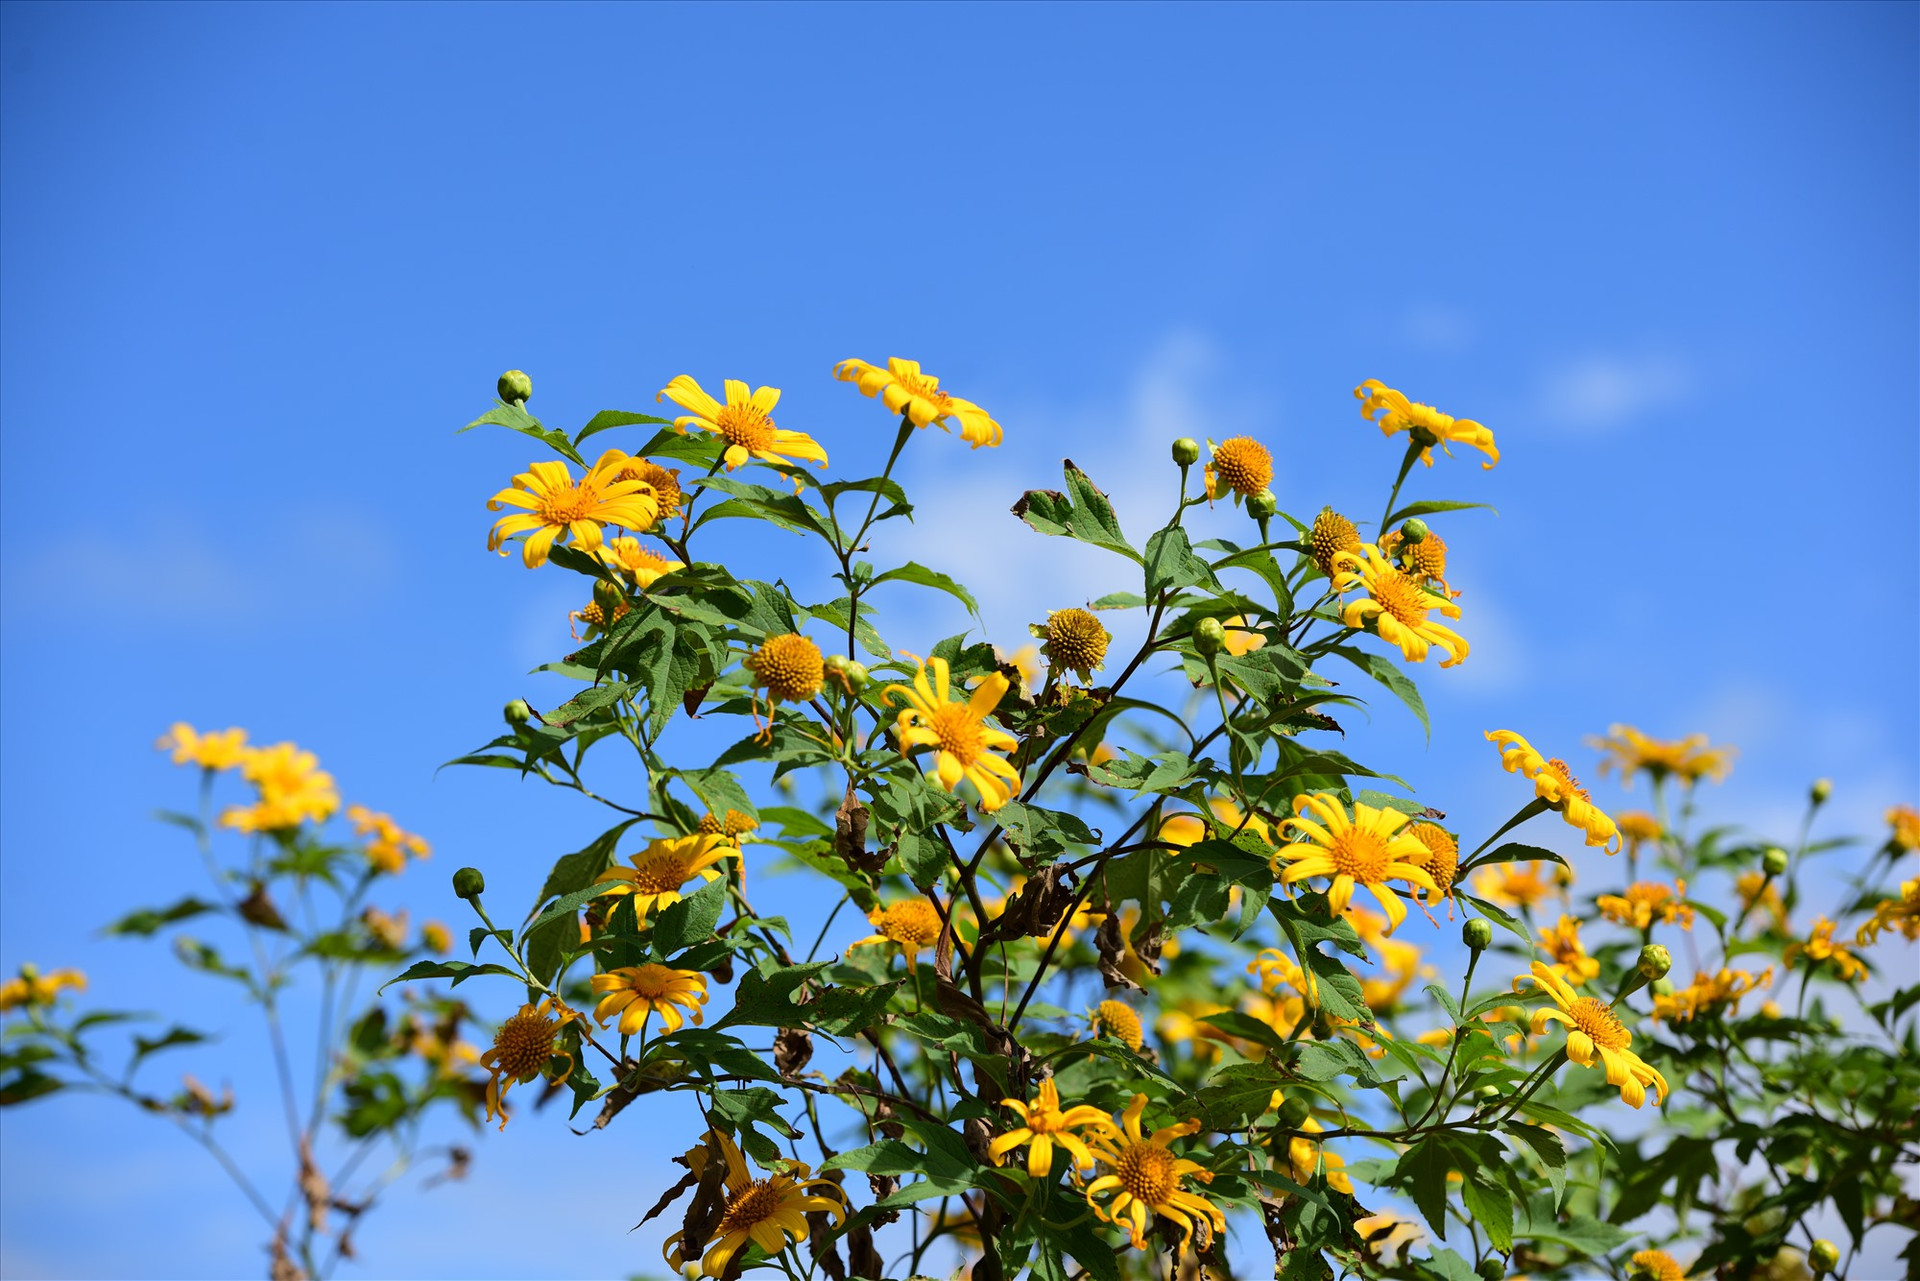 Theo các nhà nghiên cứu văn hóa ở vùng cao nguyên Gia Lai, dẫu trong mưa rét hay gió lạnh thì những cánh hoa dã quỳ vẫn ẩn chứa một sức sống mãnh liệt vươn lên trong mưa trong gió để khoe trọn sắc vàng...